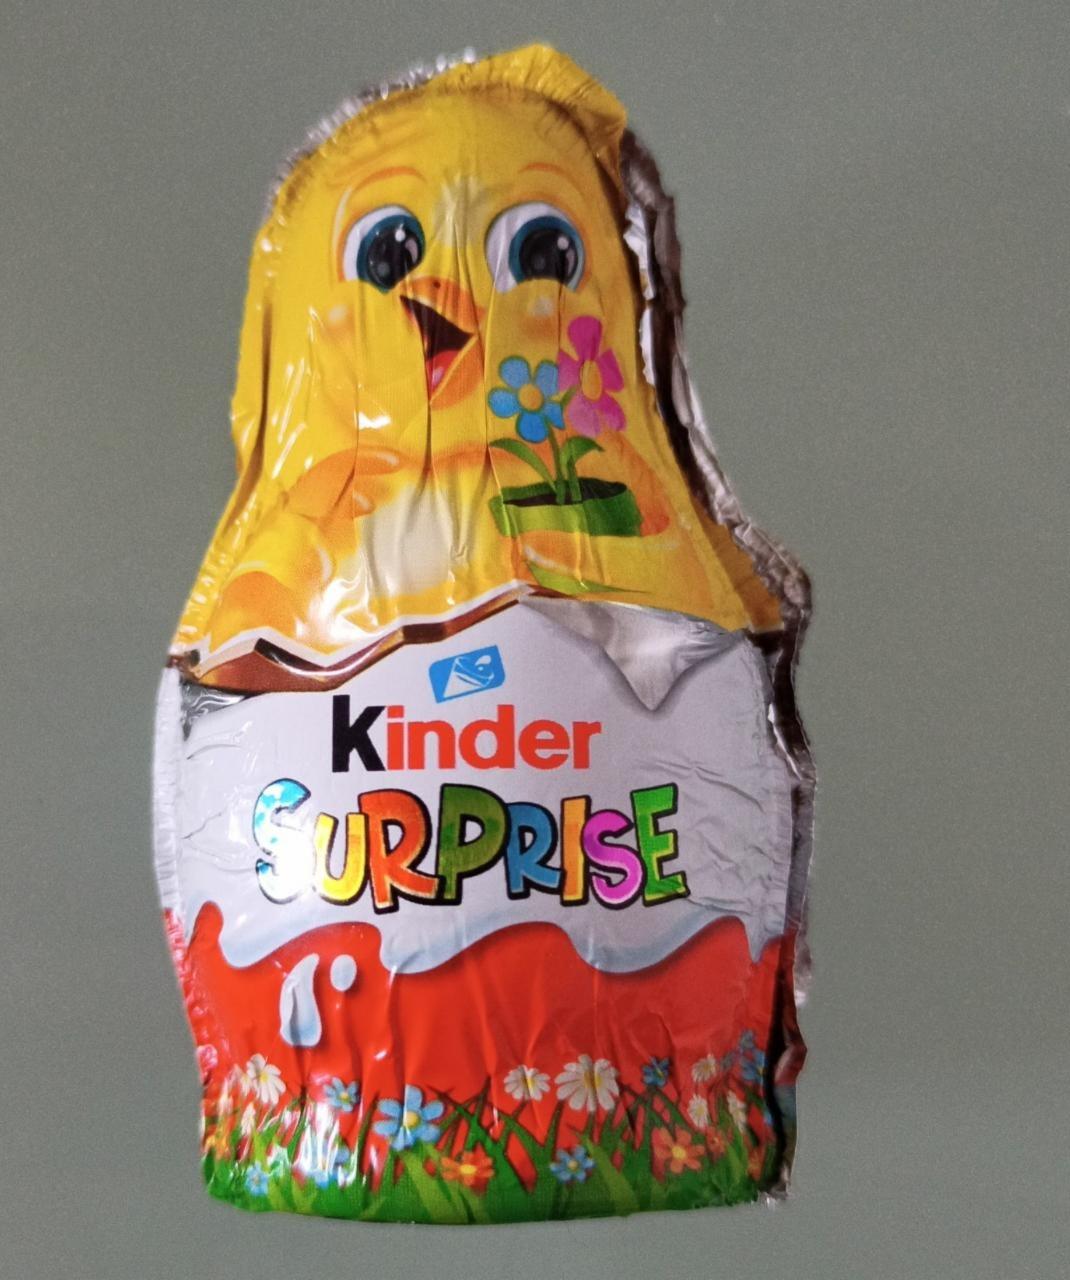 Fotografie - Surprise Easter Figure Kinder